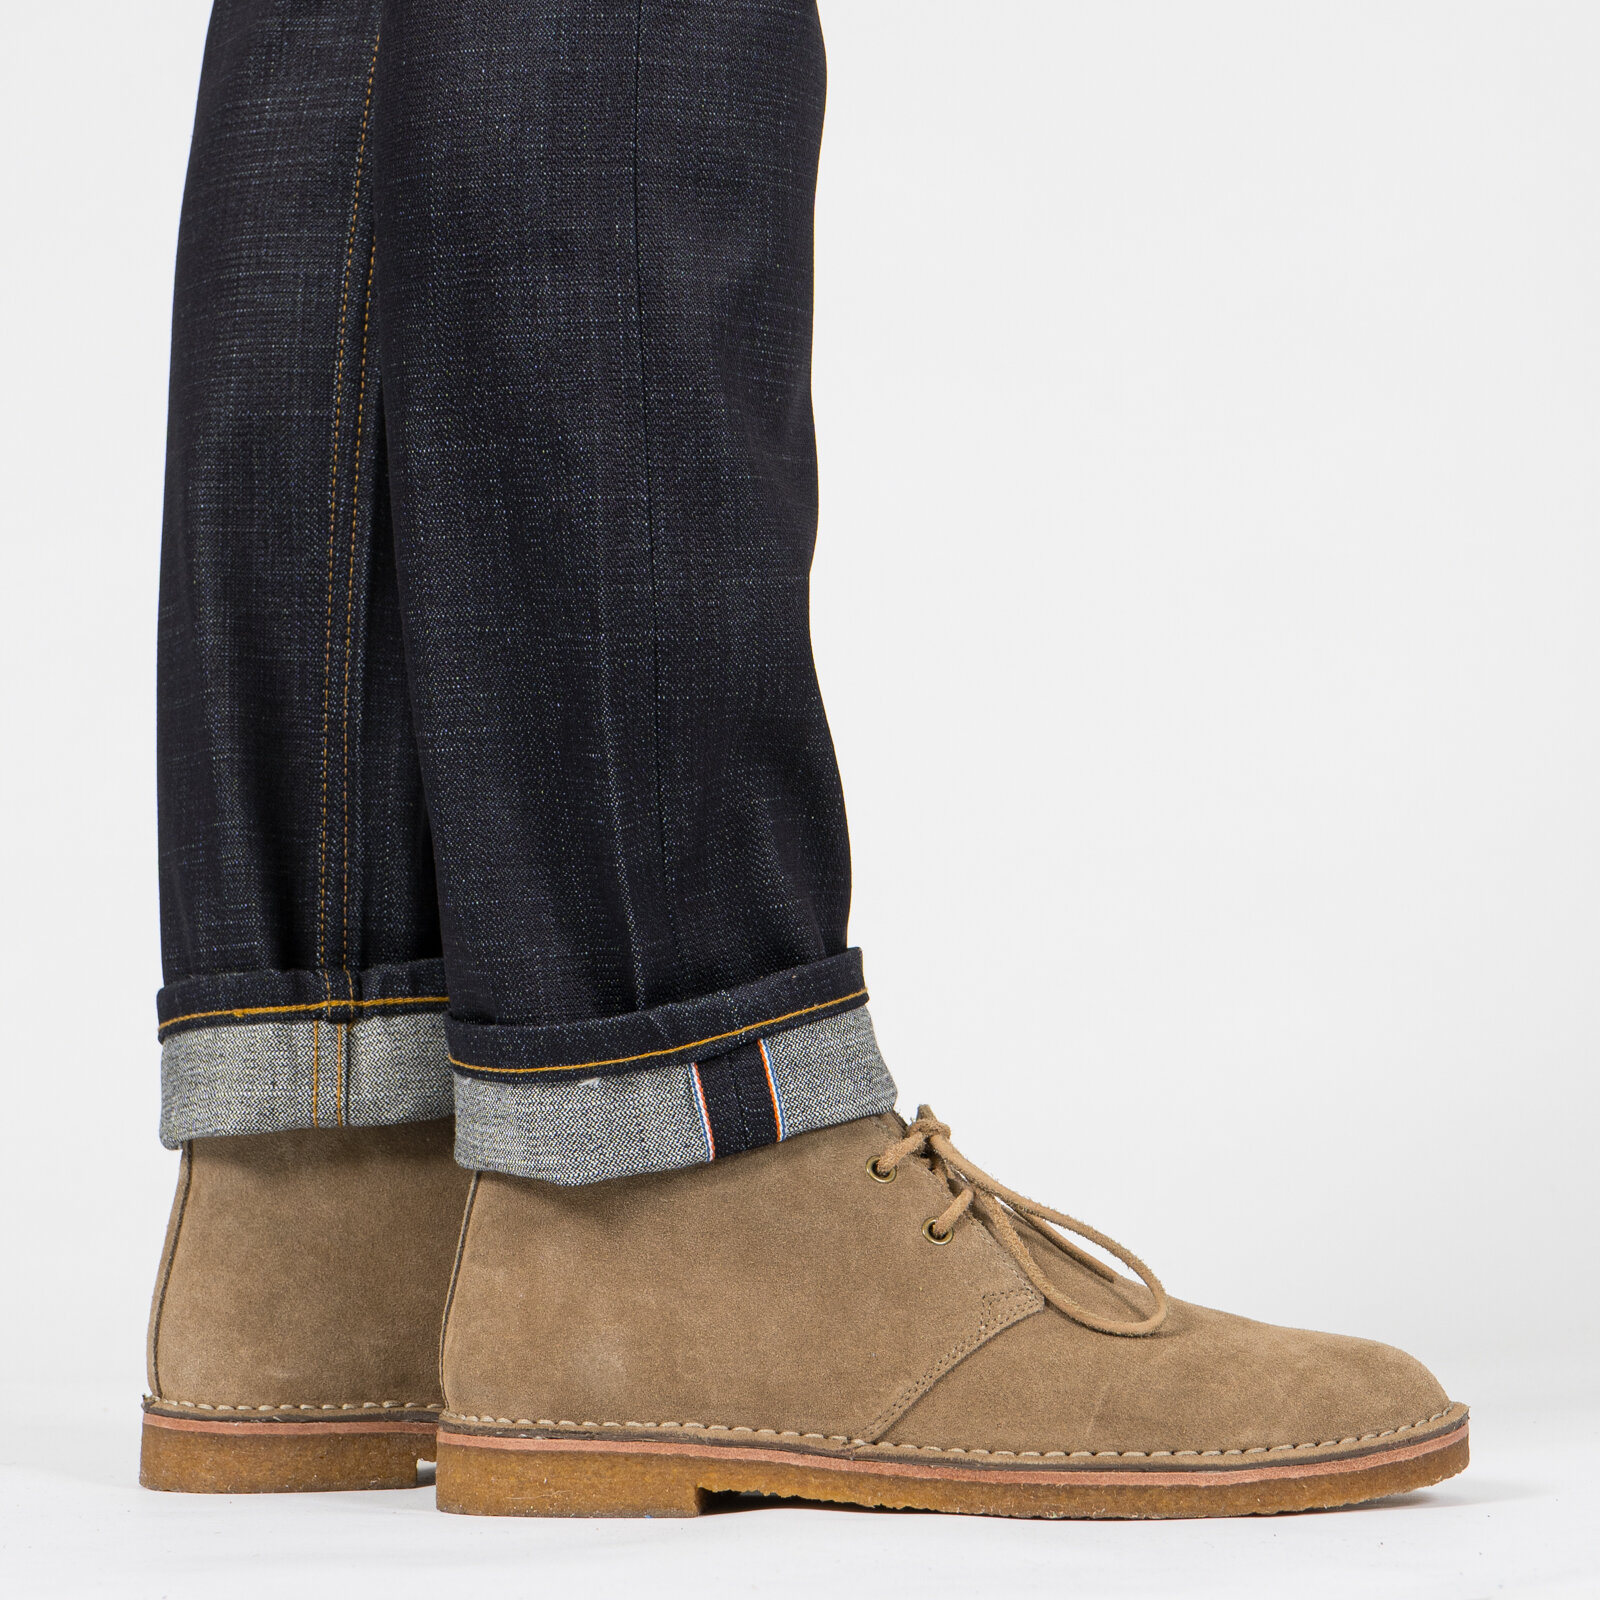  Empire State Selvedge jeans - cuff   